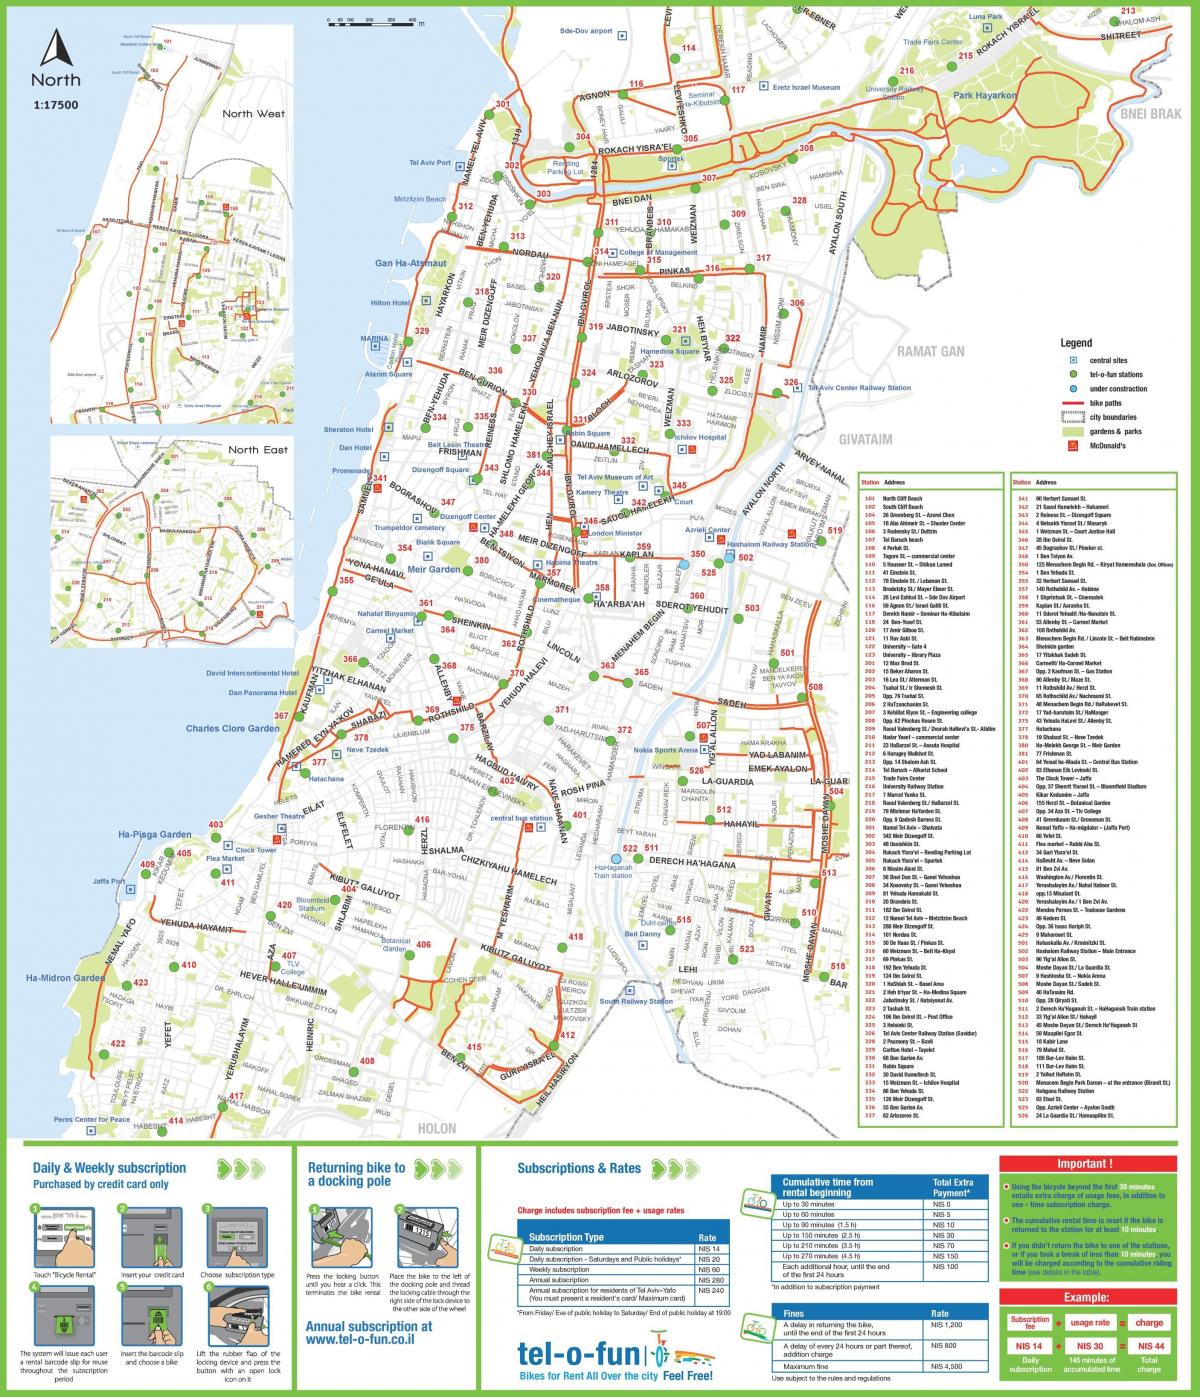 Tel Aviv bike lane map